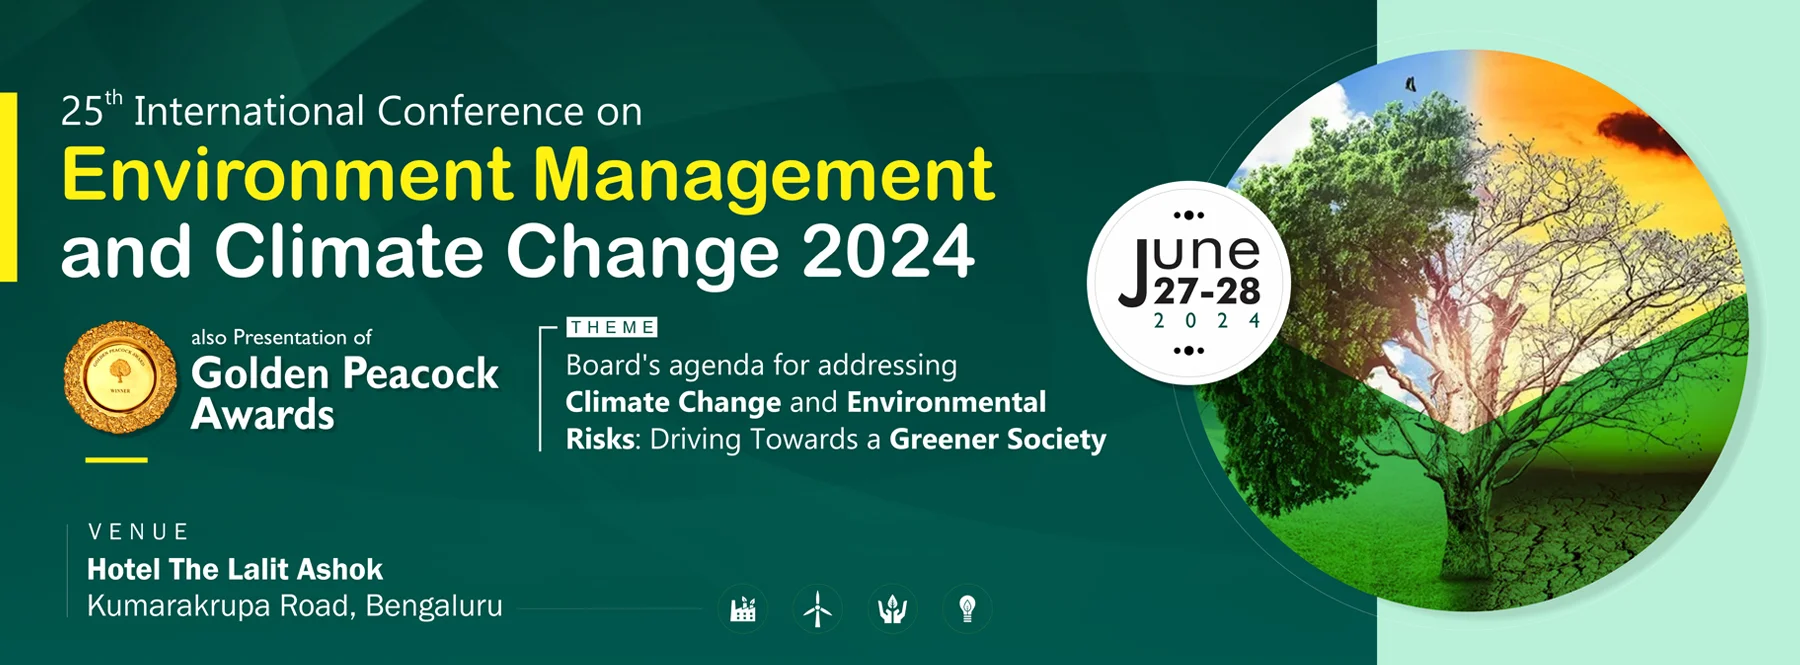 World Congress on Environment Management 2024